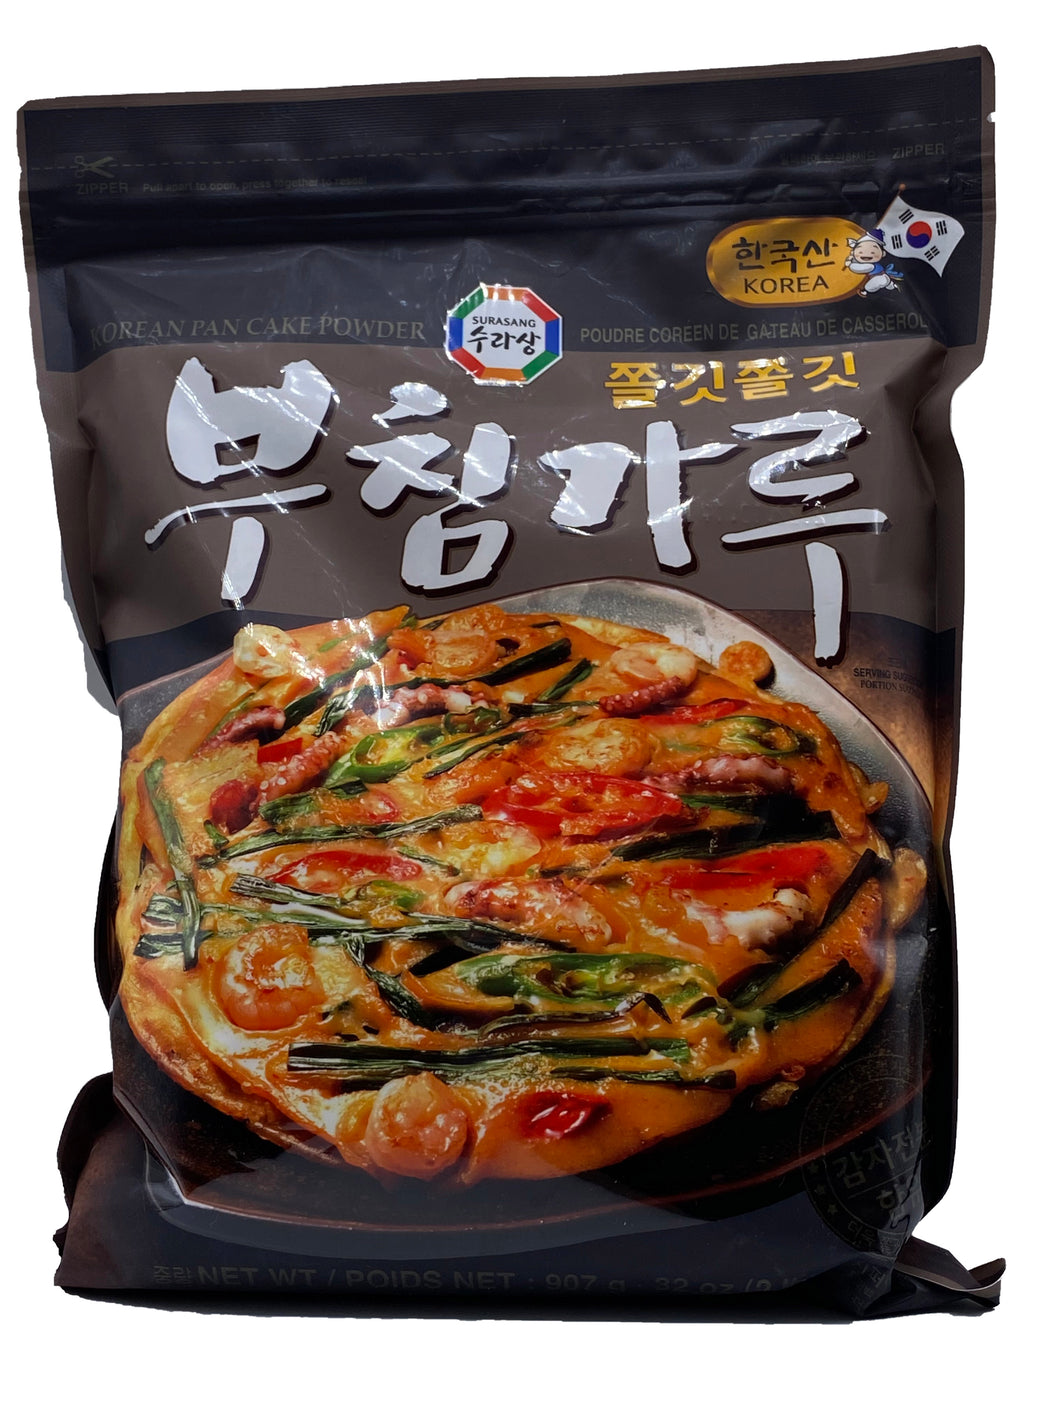 Surasang Korean Pancake Powder